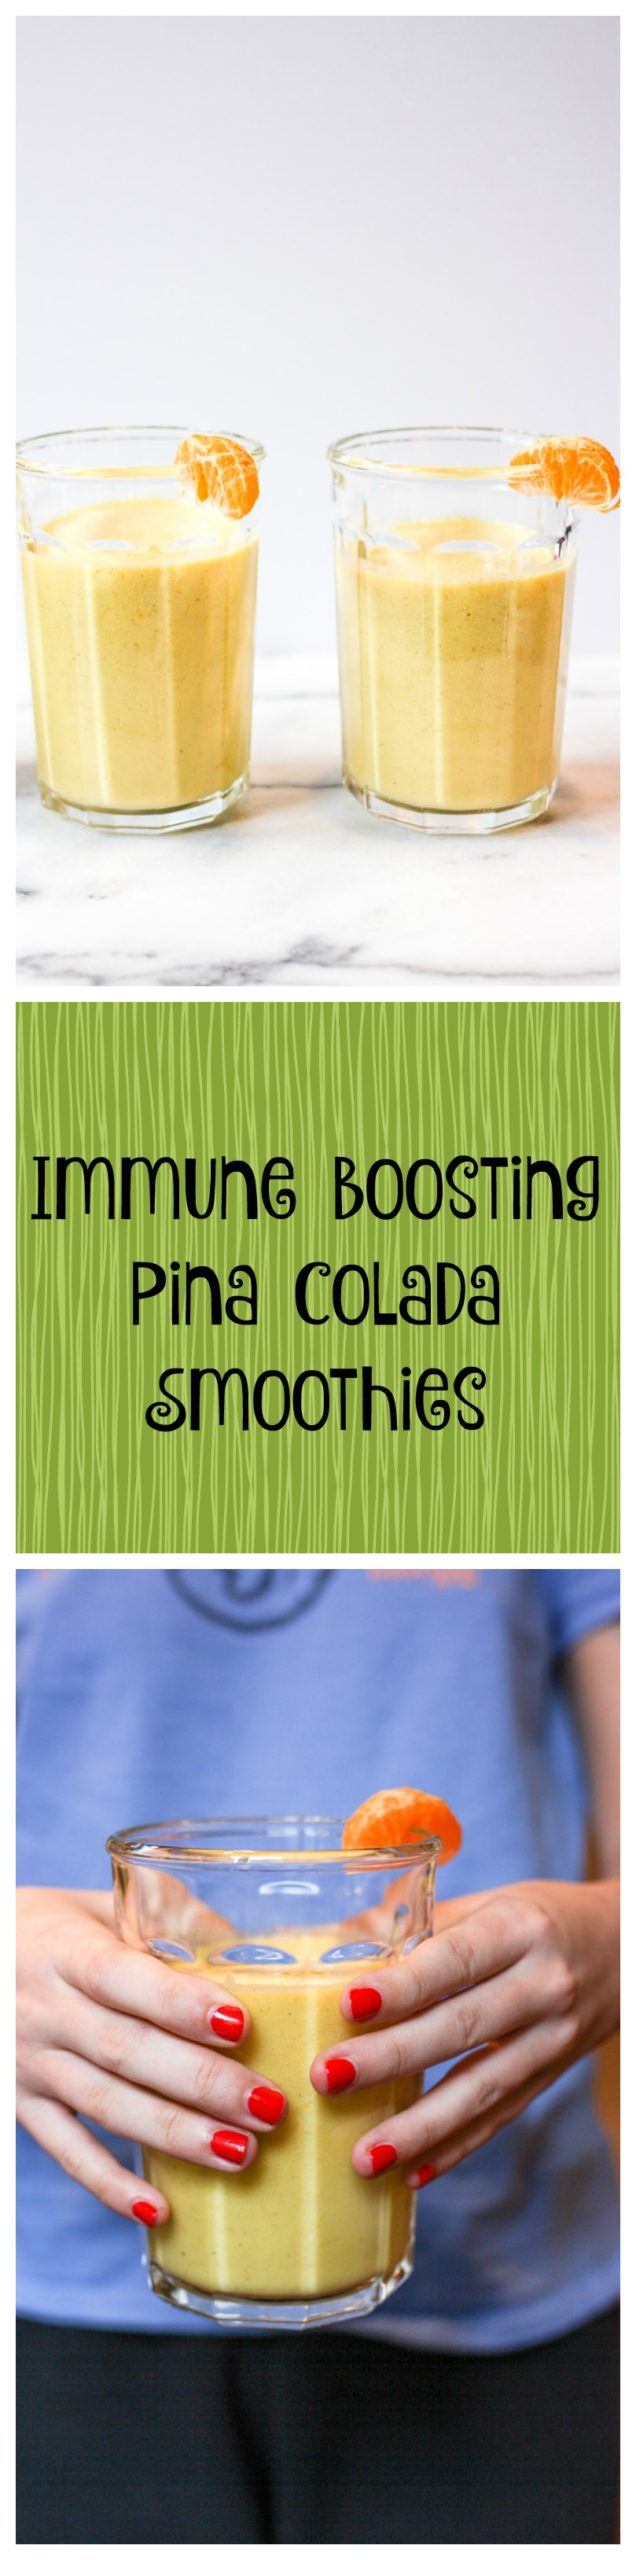 immune boosting pina colada smoothies